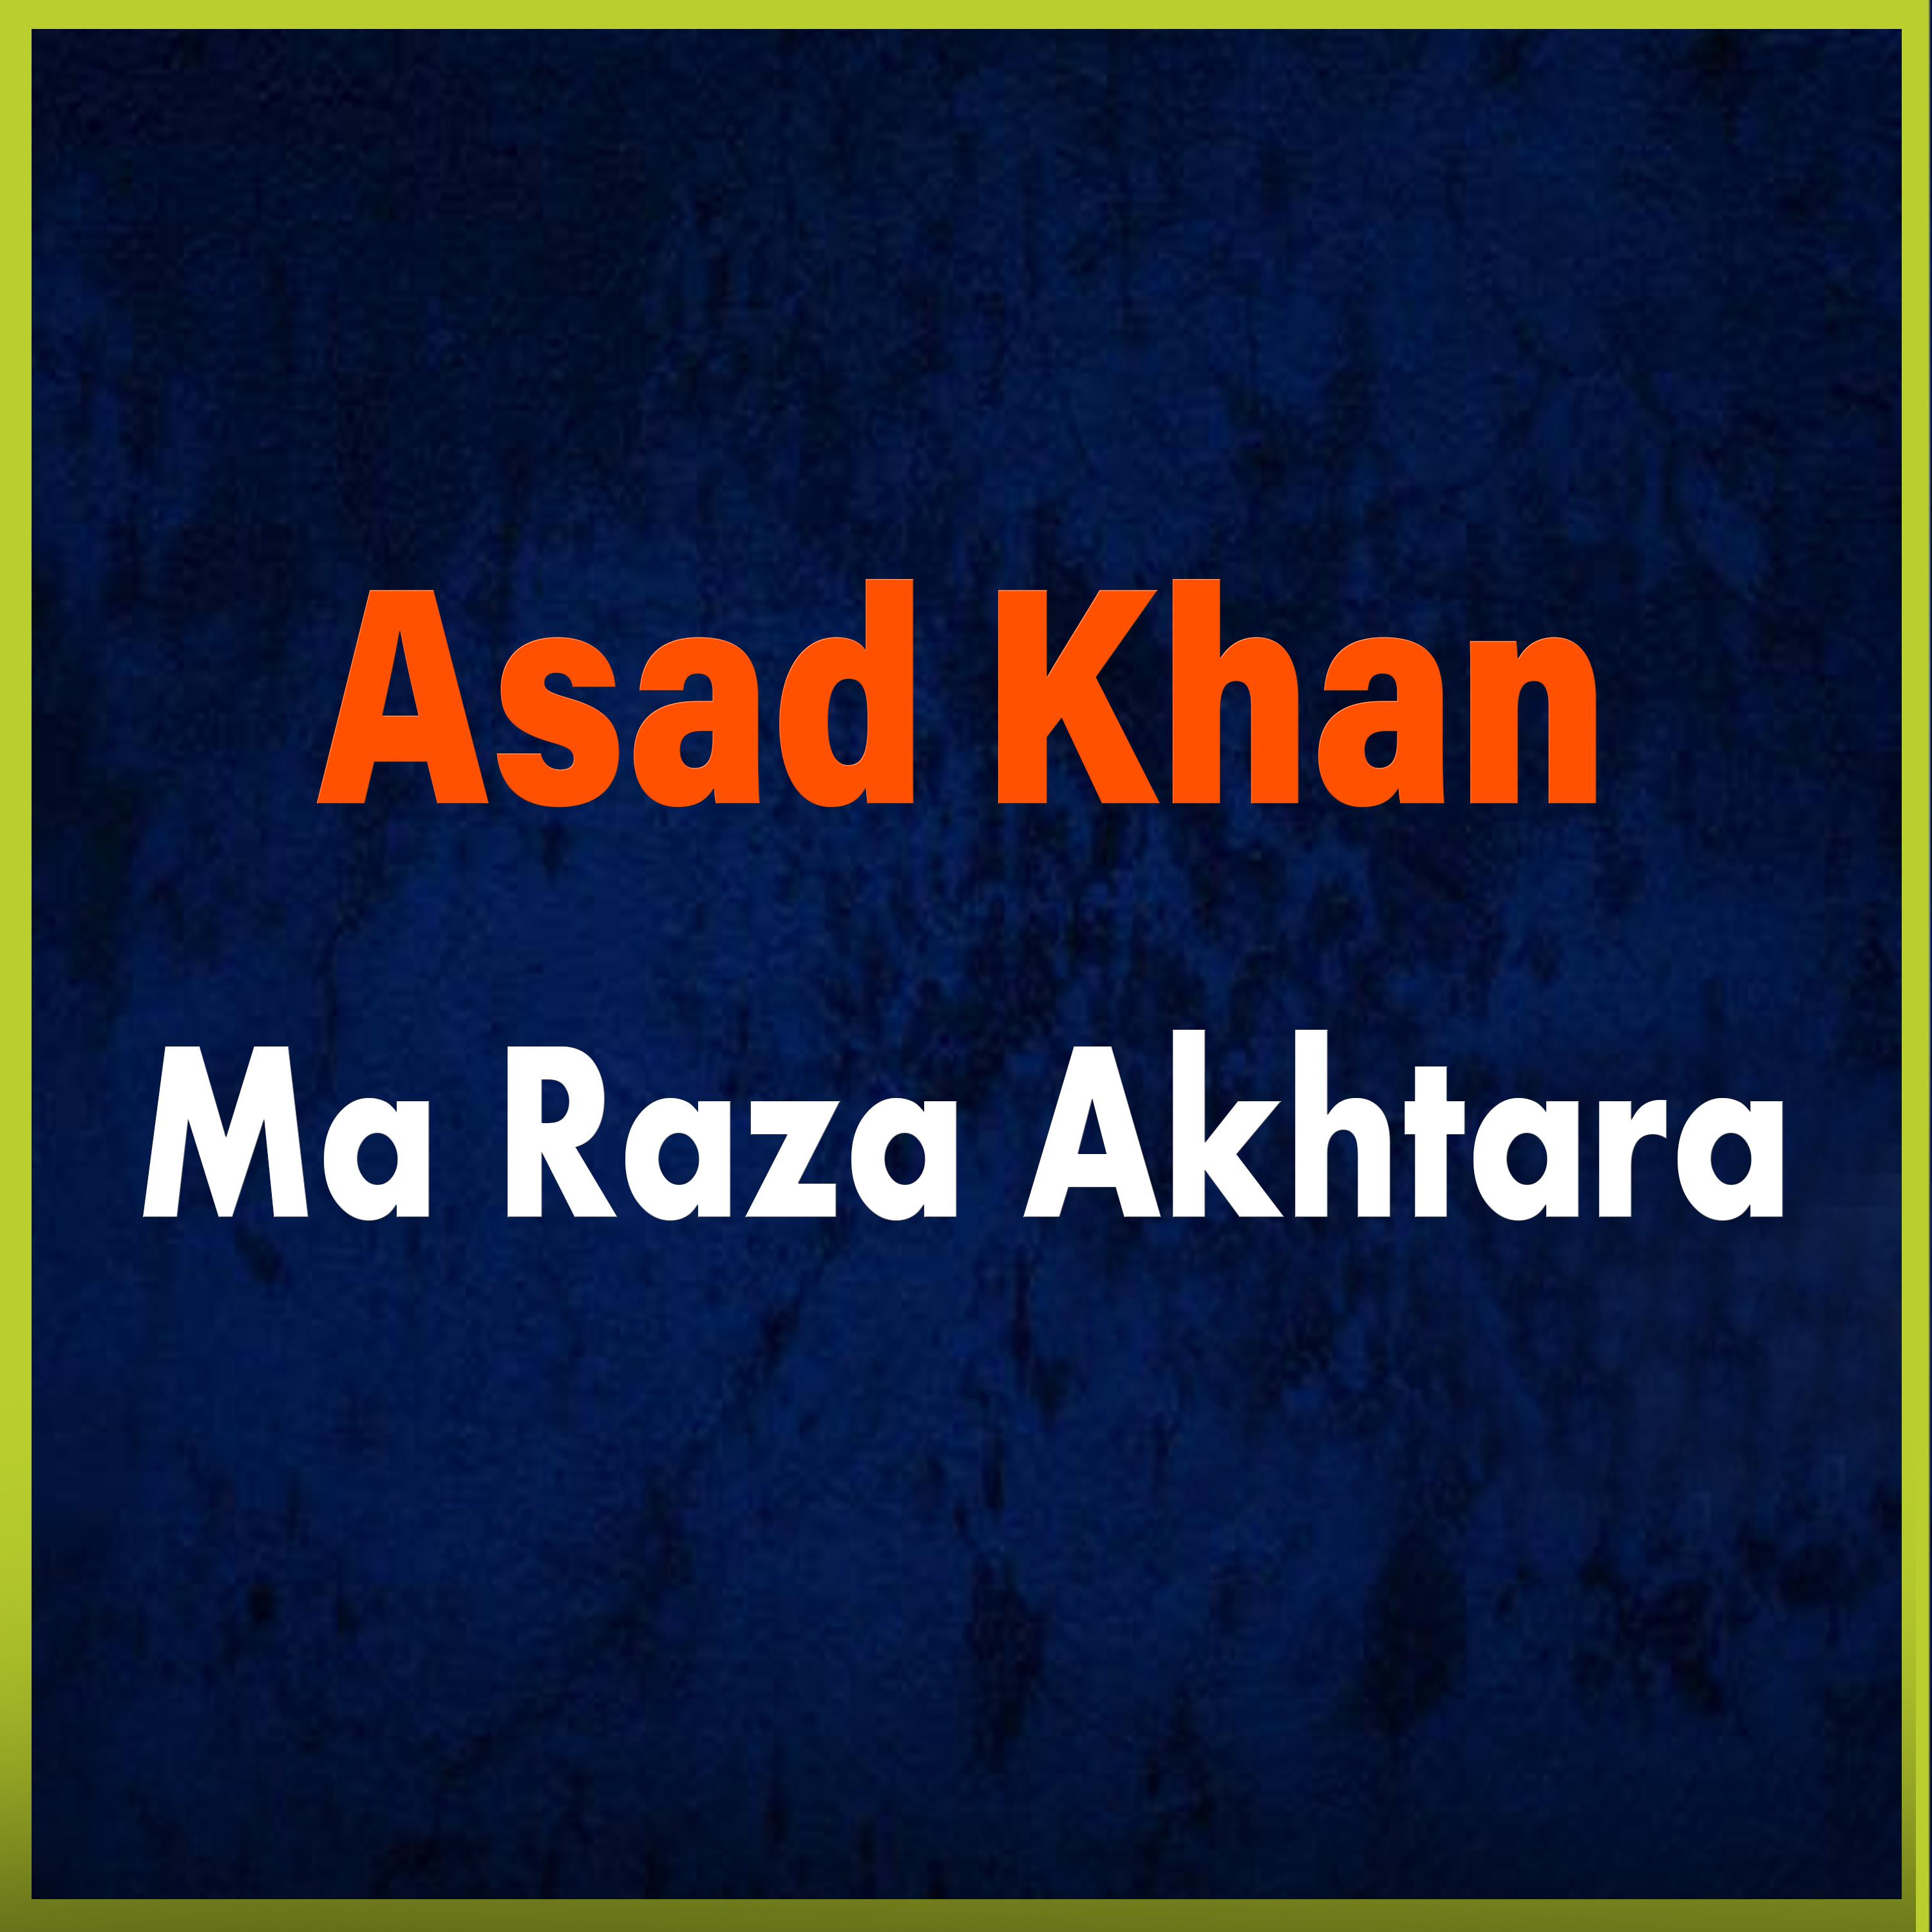 Asad Khan - Nan De Bia Starge Sre